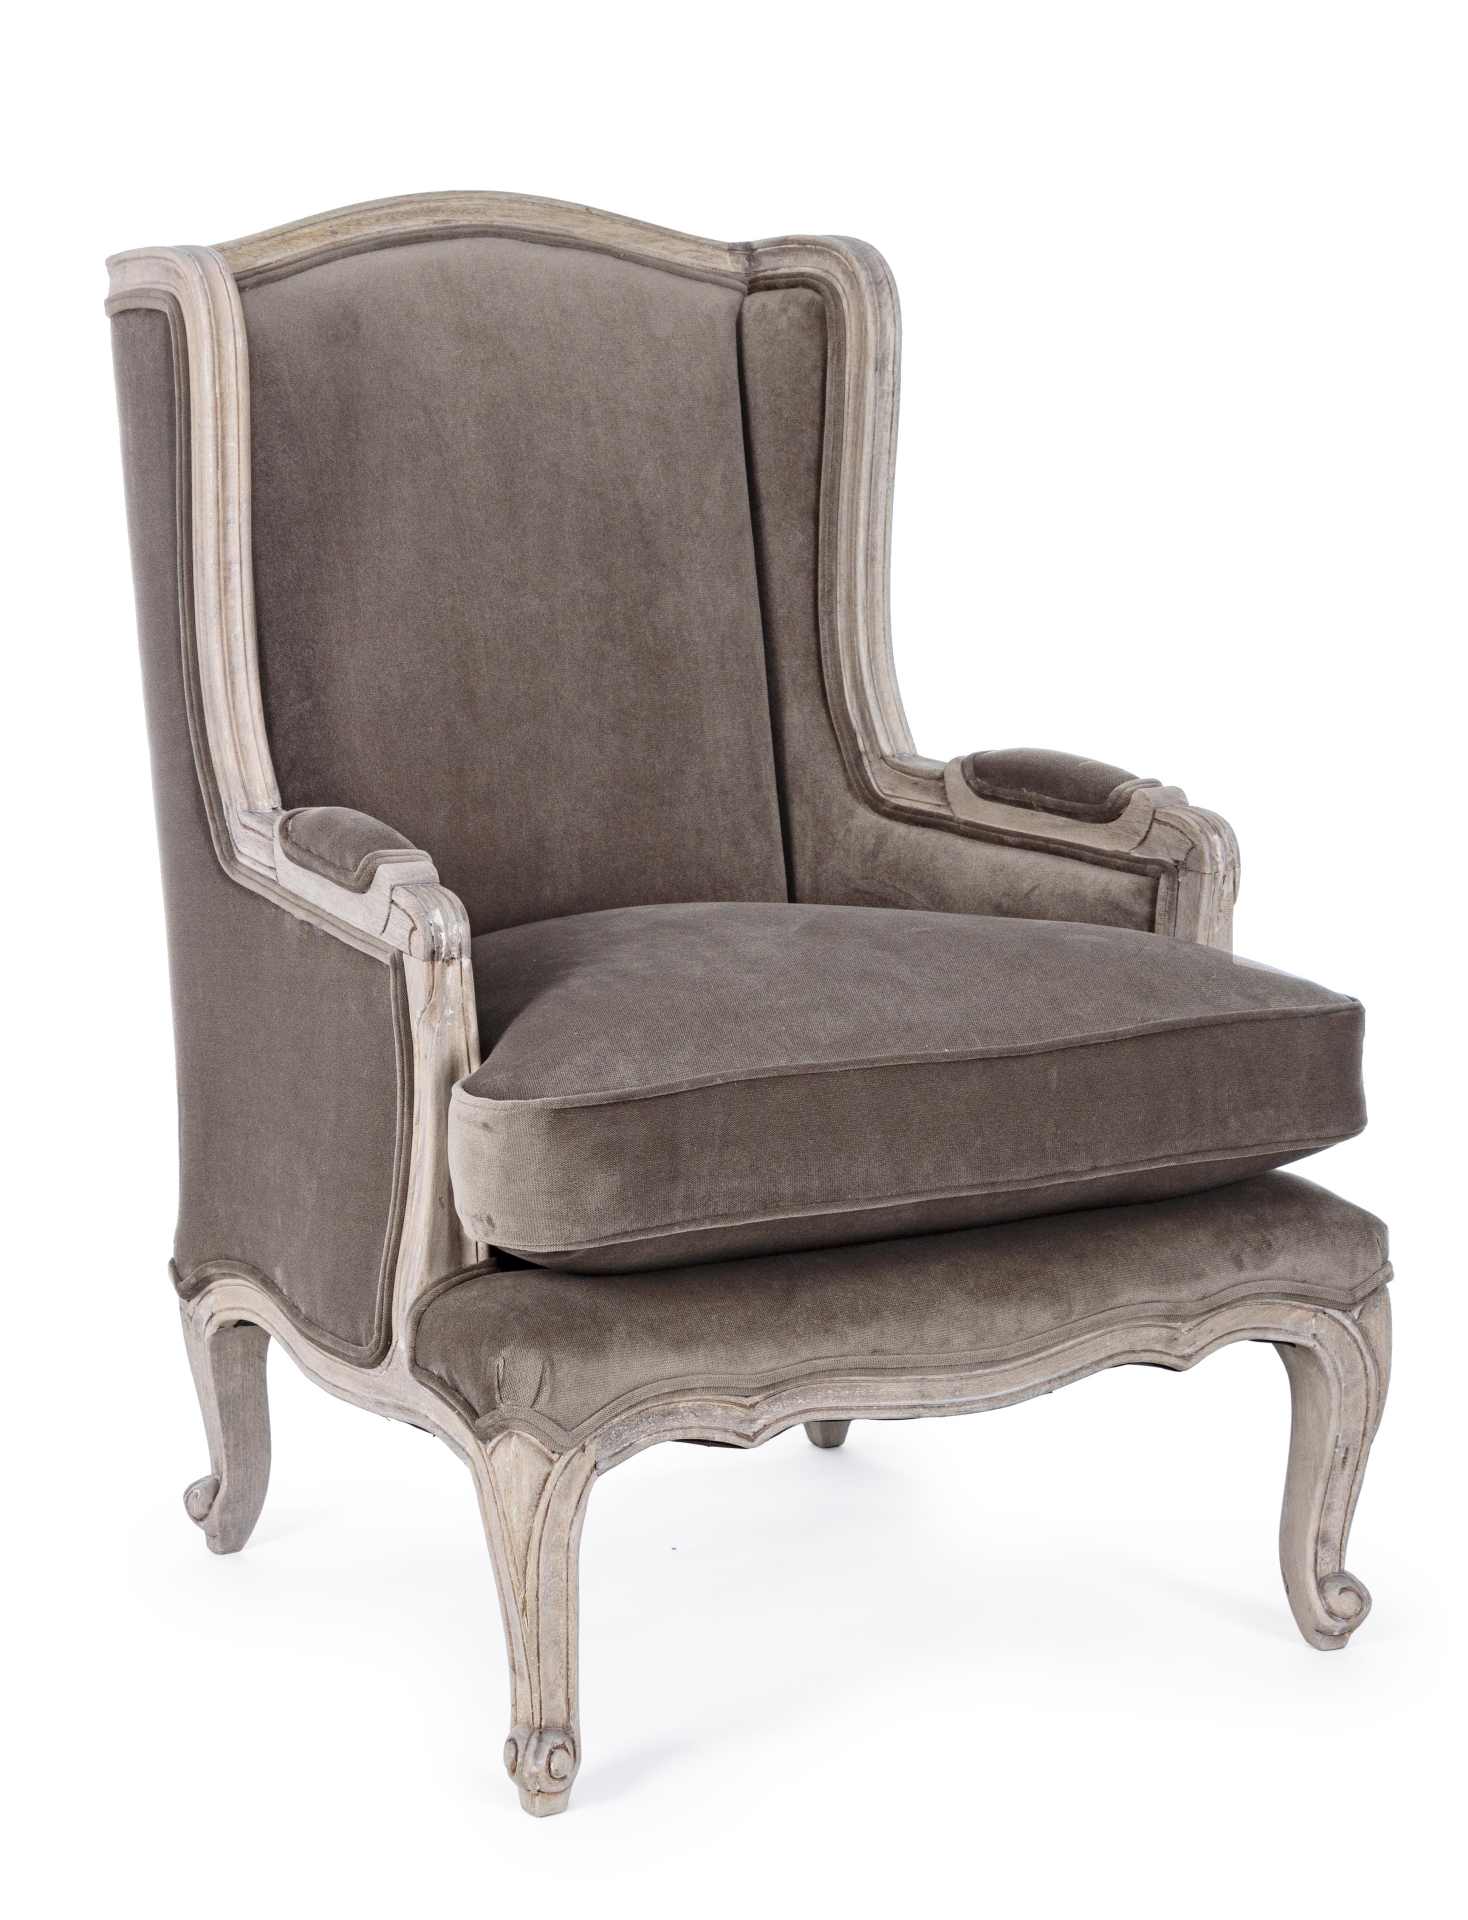 Der Sessel Lorelie überzeugt mit seinem klassischen Design. Gefertigt wurde er aus Stoff in Samt-Optik, welcher einen grauen Farbton besitzt. Das Gestell ist aus Mangoholz und hat eine natürliche Farbe. Der Sessel besitzt eine Sitzhöhe von 53 cm. Die Brei